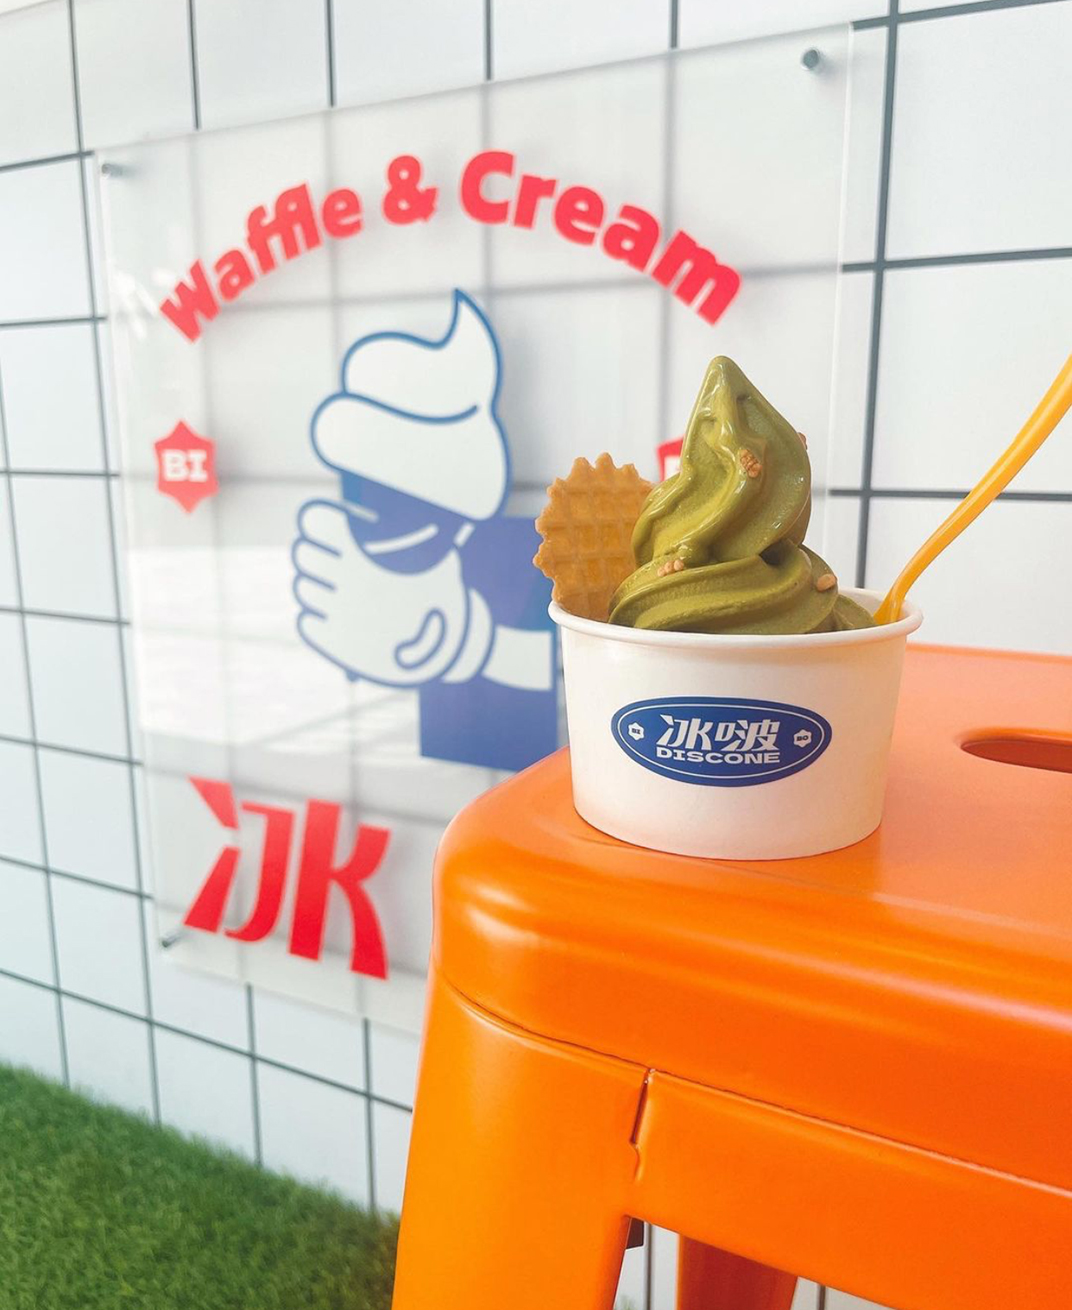 冰淇淋店冰啵Discone 台湾 上海 杭州 成都 甜品店 冰淇淋 蓝色 橙色 小白砖 logo设计 vi设计 空间设计